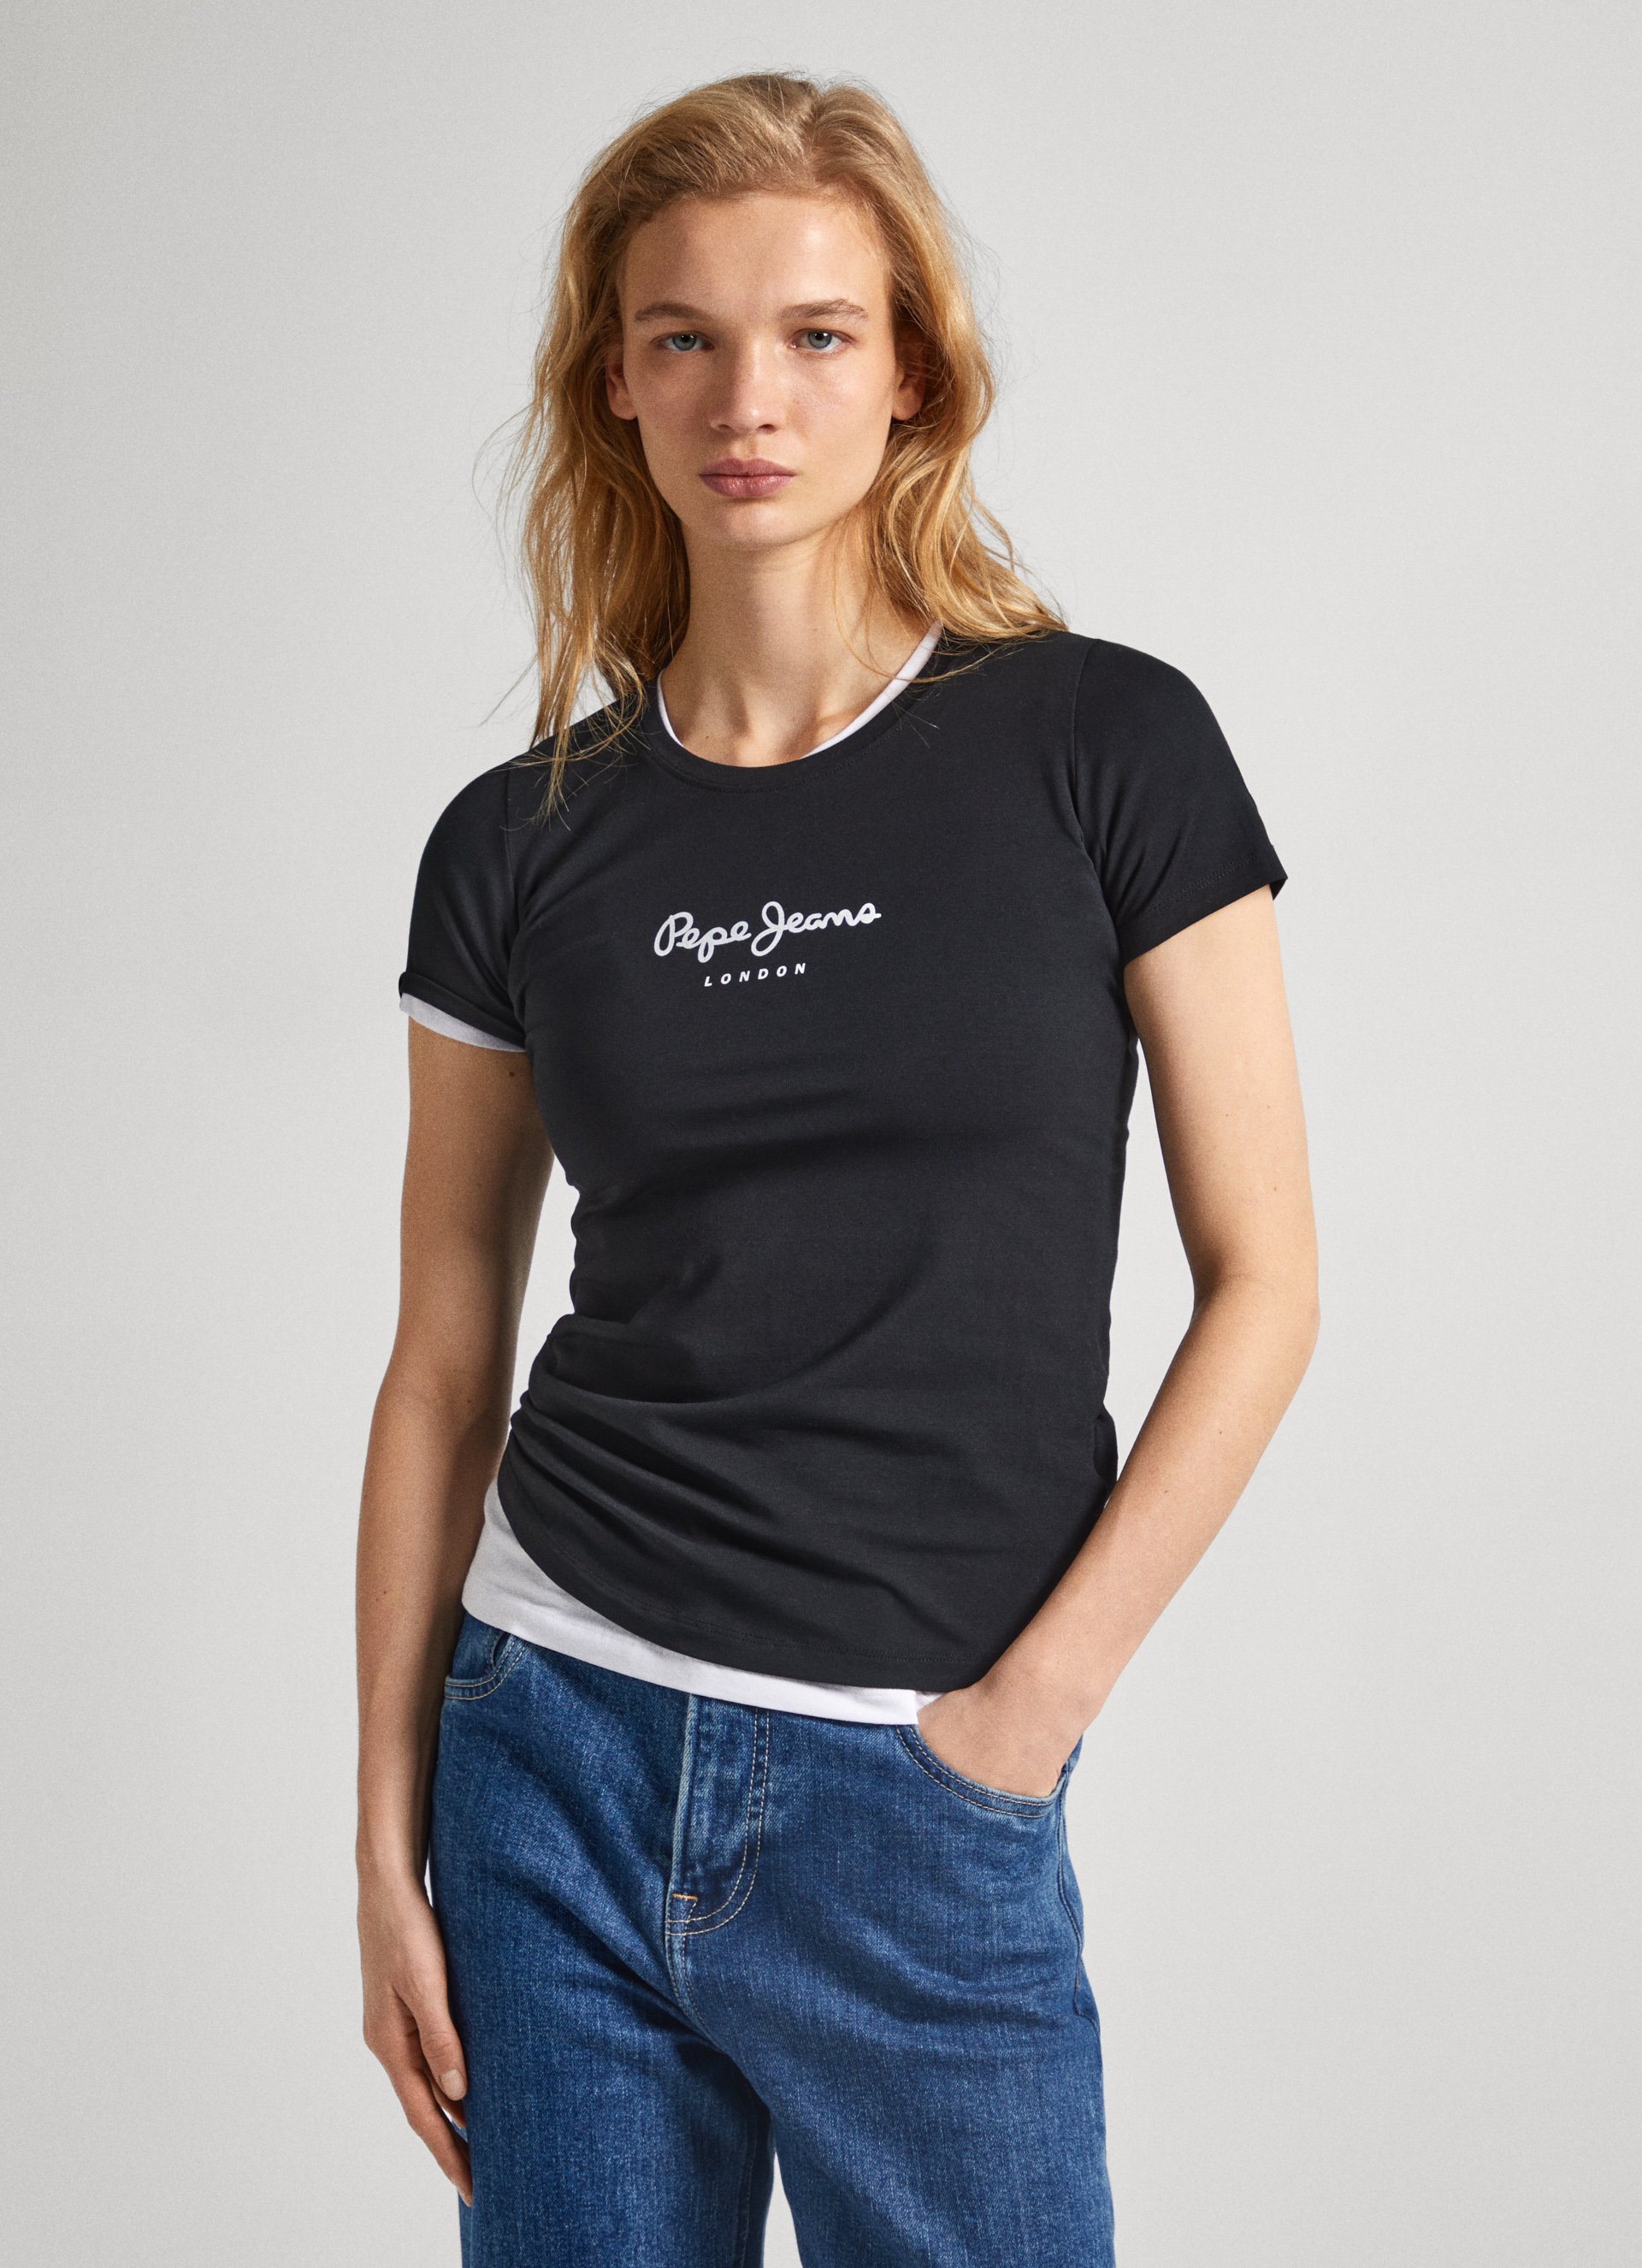 Camisetas de Mujer | Nueva Colección | PEPE JEANS